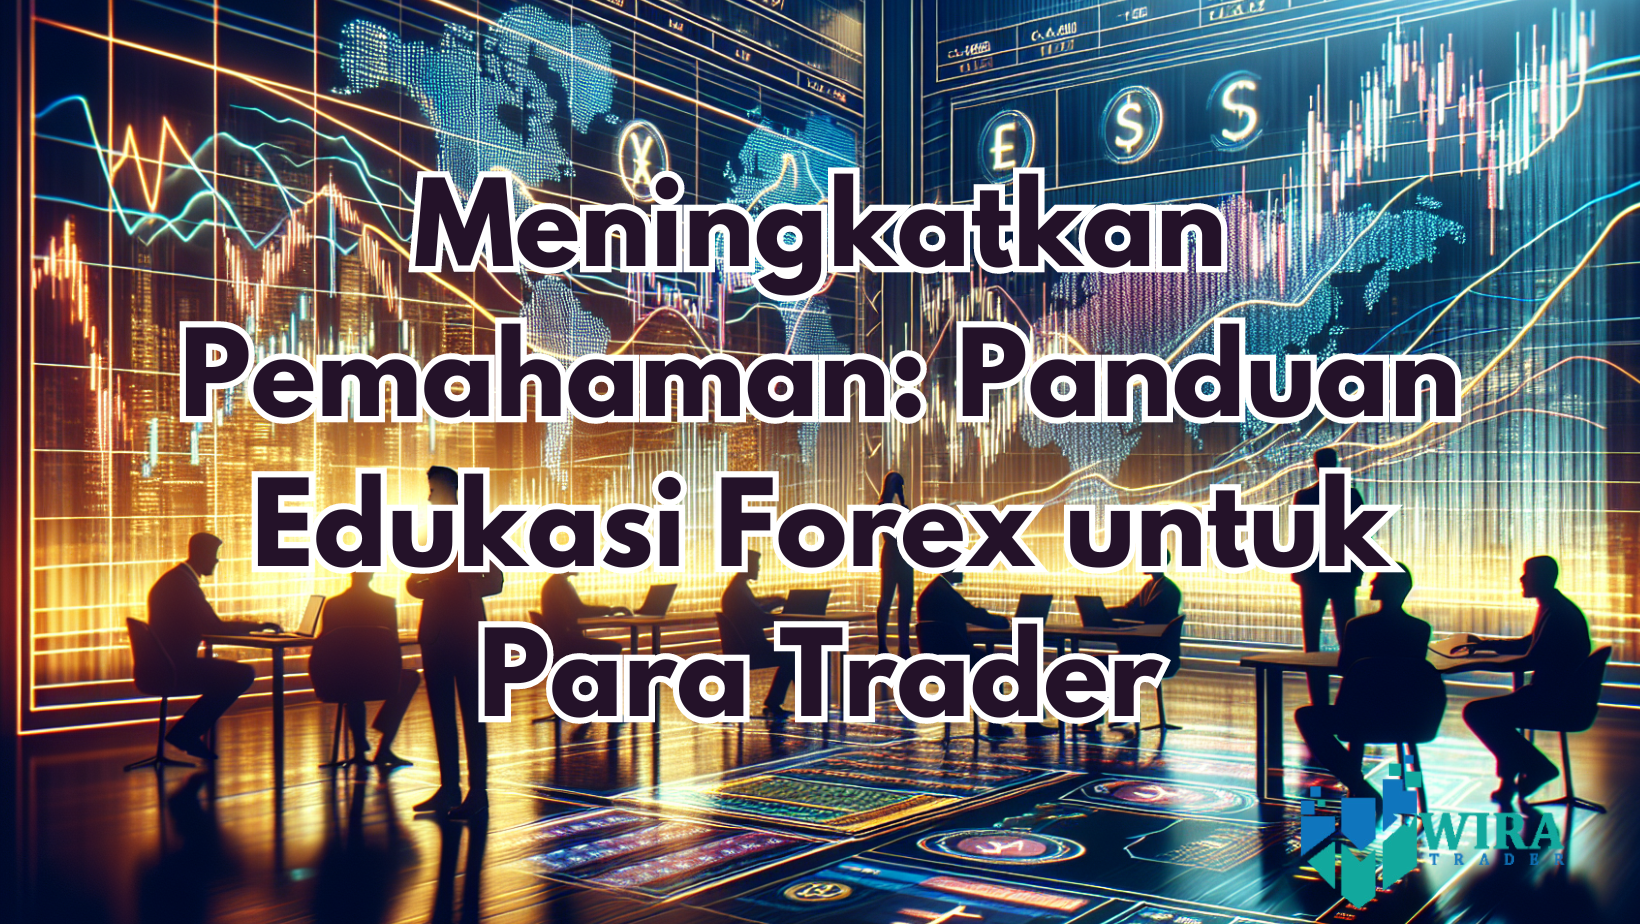 You are currently viewing Meningkatkan Pemahaman: Panduan Edukasi Forex untuk Para Trader